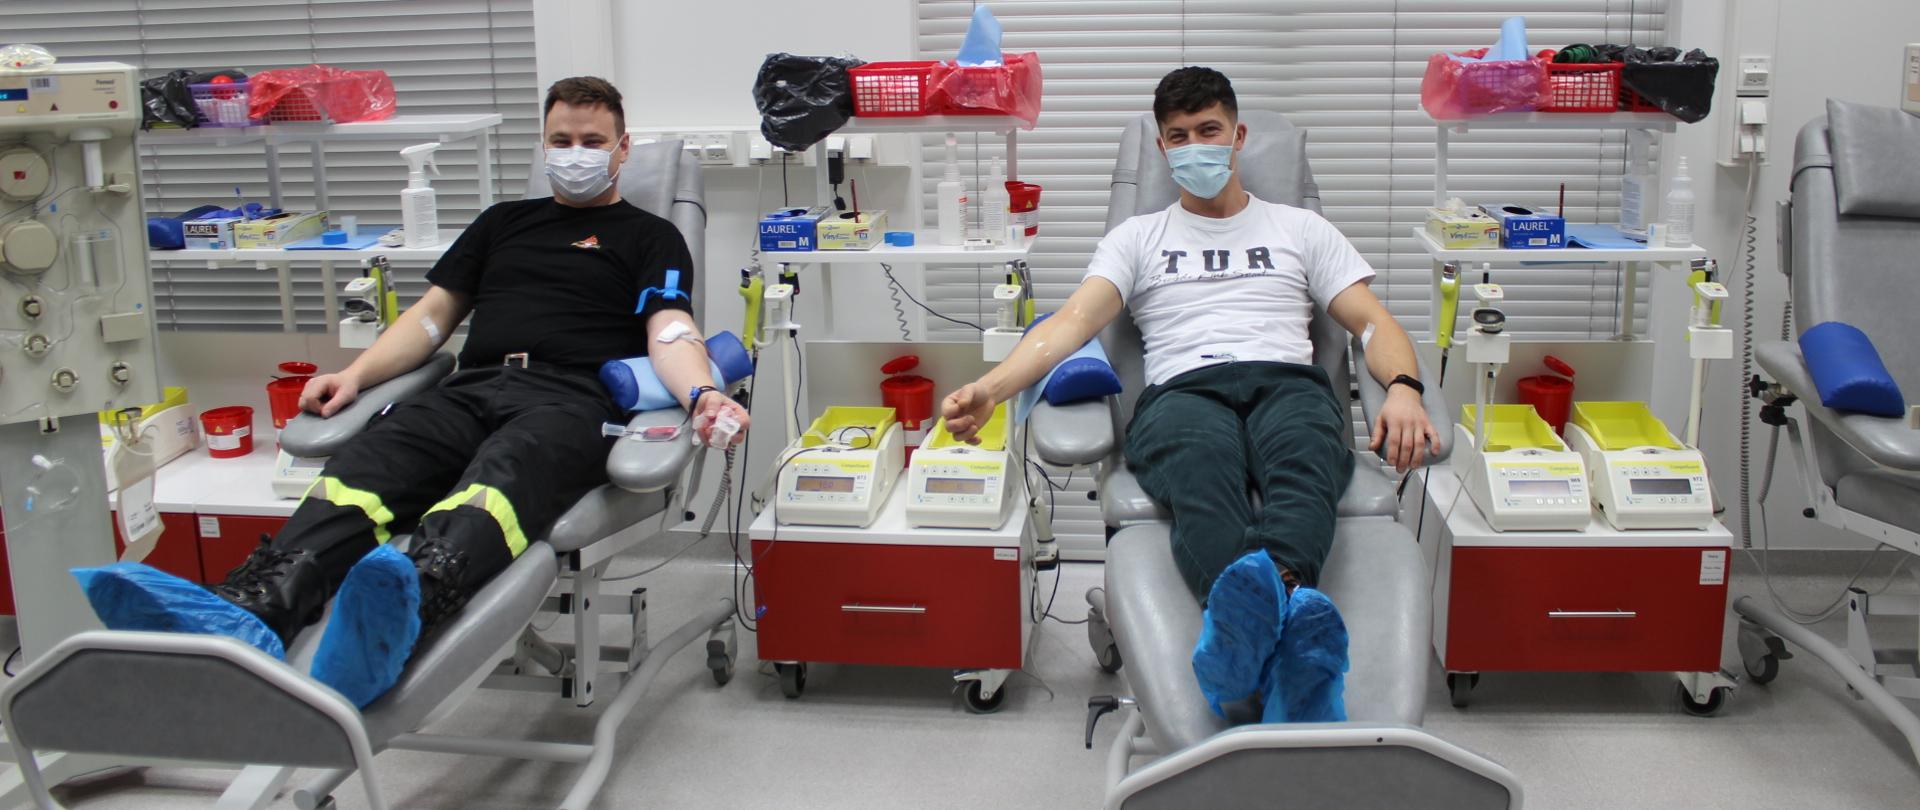 Zdjęcie przedstawia dwóch mężczyzn siedzących na fotelach podczas zdawania krwi obok znajdują się czerwone szafki 